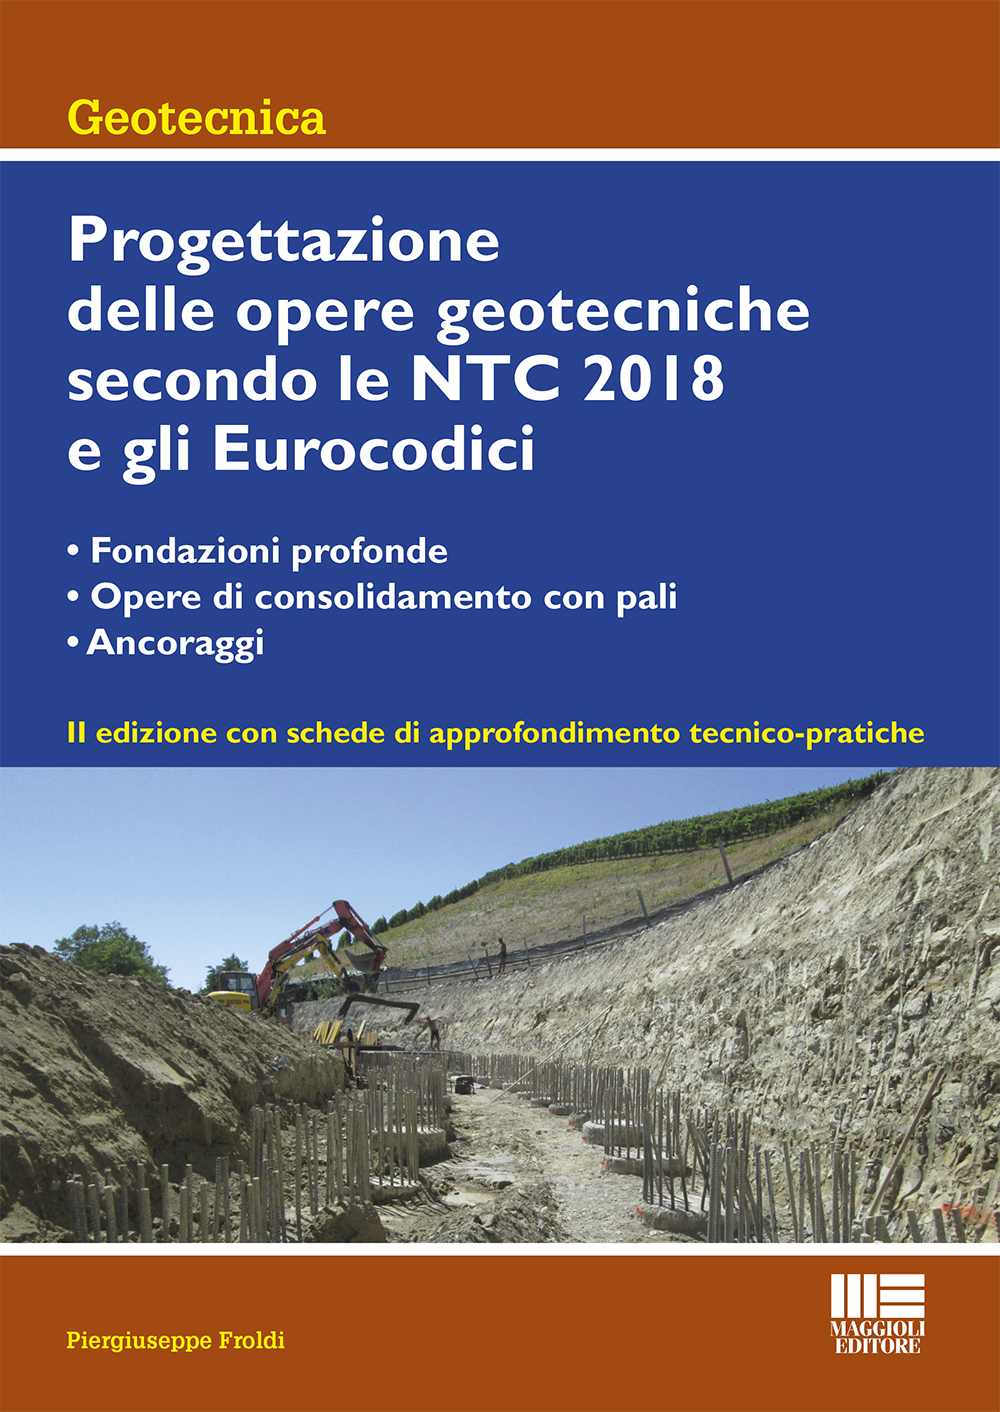 Progettazione delle opere geotecniche secondo le NTC 2018 e gli Eurocodici